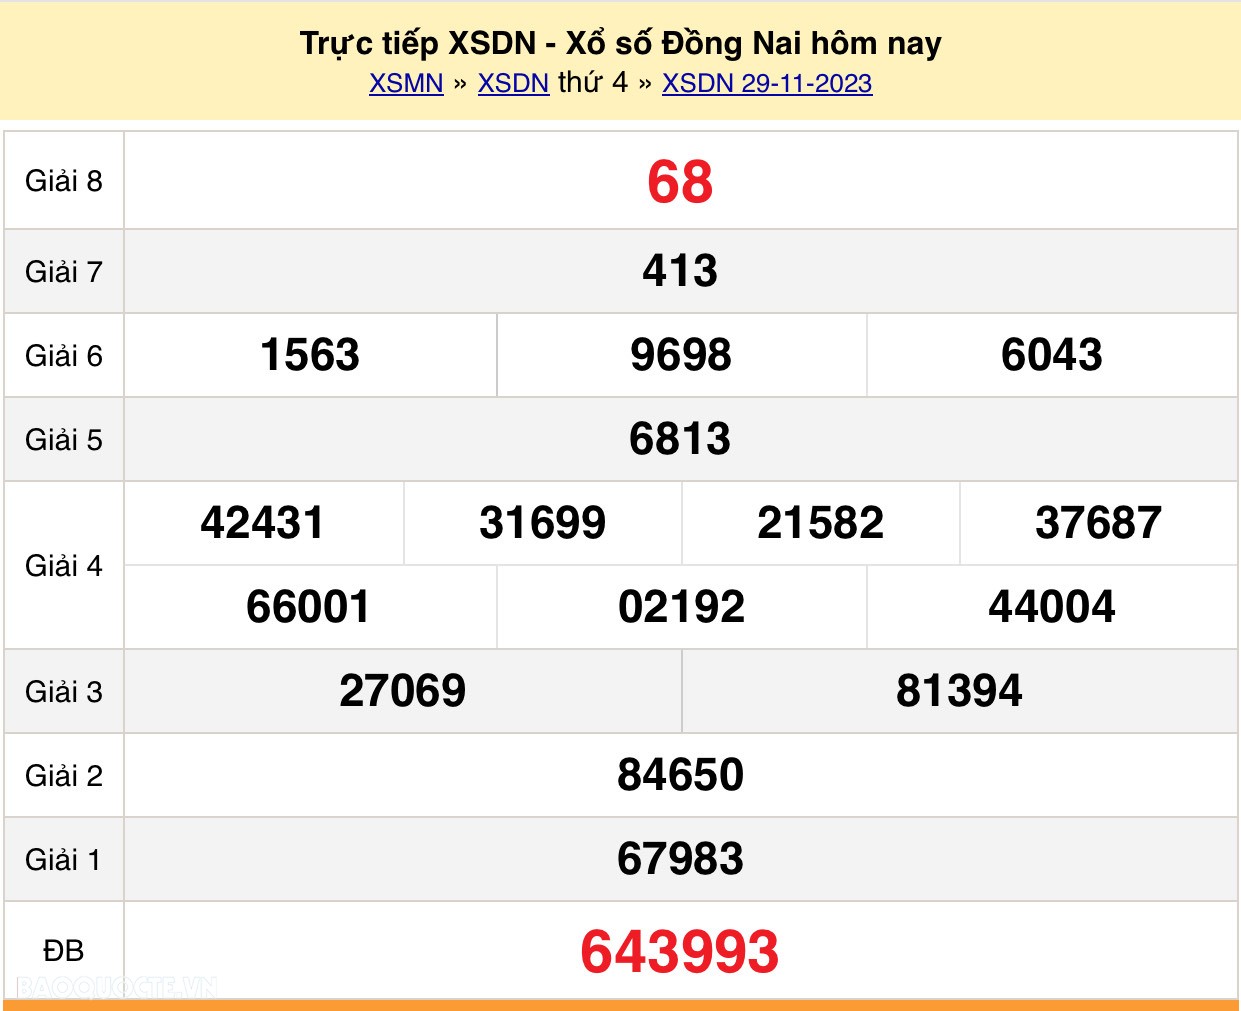 XSDN 29/11, Trực tiếp kết quả xổ số Đồng Nai hôm nay 29/11/2023. KQXSDN thứ 4